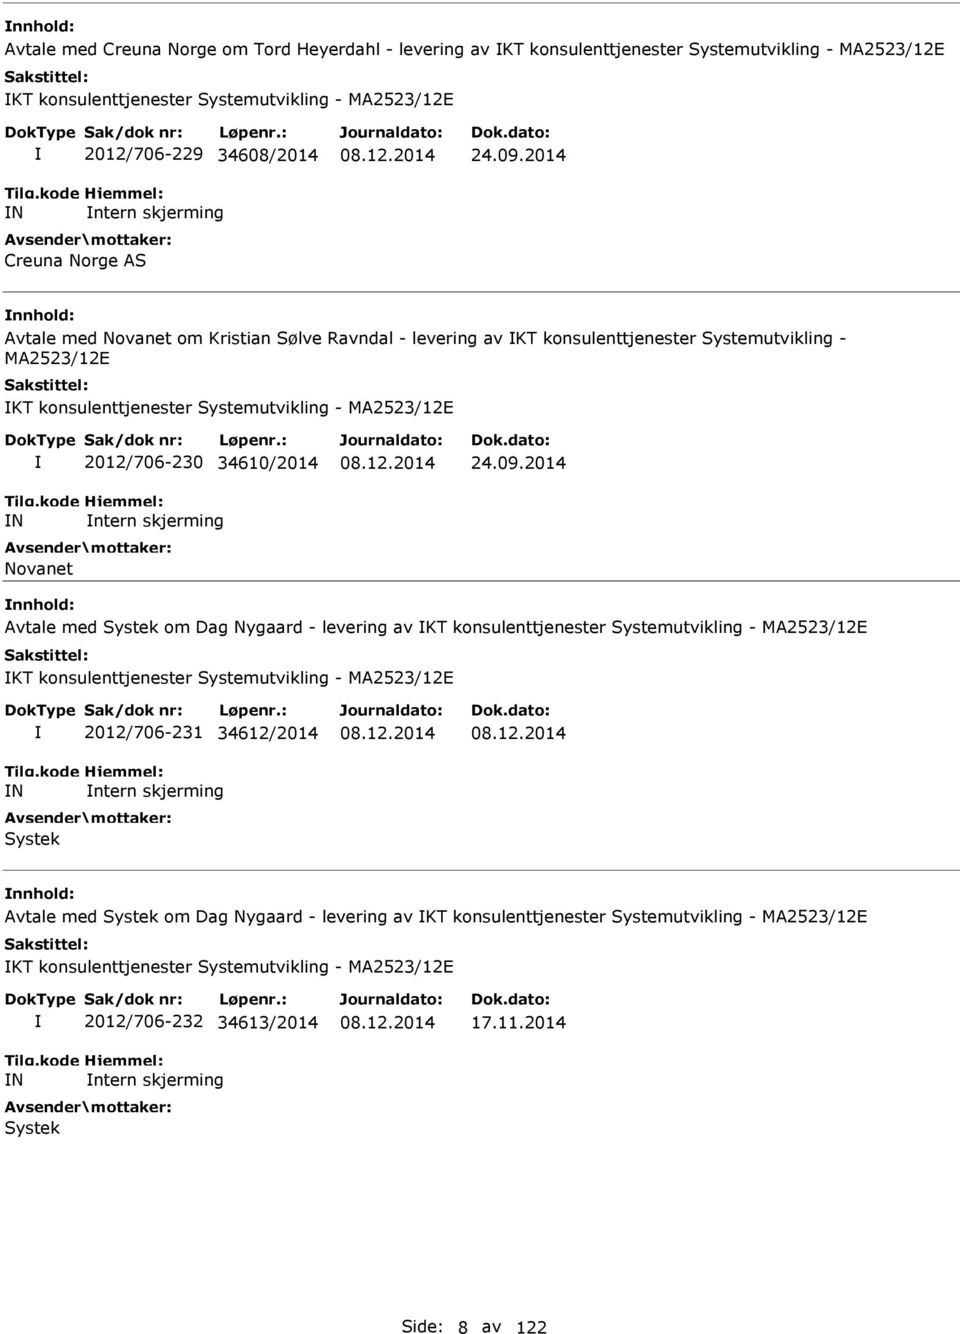 2014 Avtale med Novanet om Kristian Sølve Ravndal - levering av KT konsulenttjenester Systemutvikling - MA2523/12E KT konsulenttjenester Systemutvikling - MA2523/12E N 2012/706-230 34610/2014 ntern